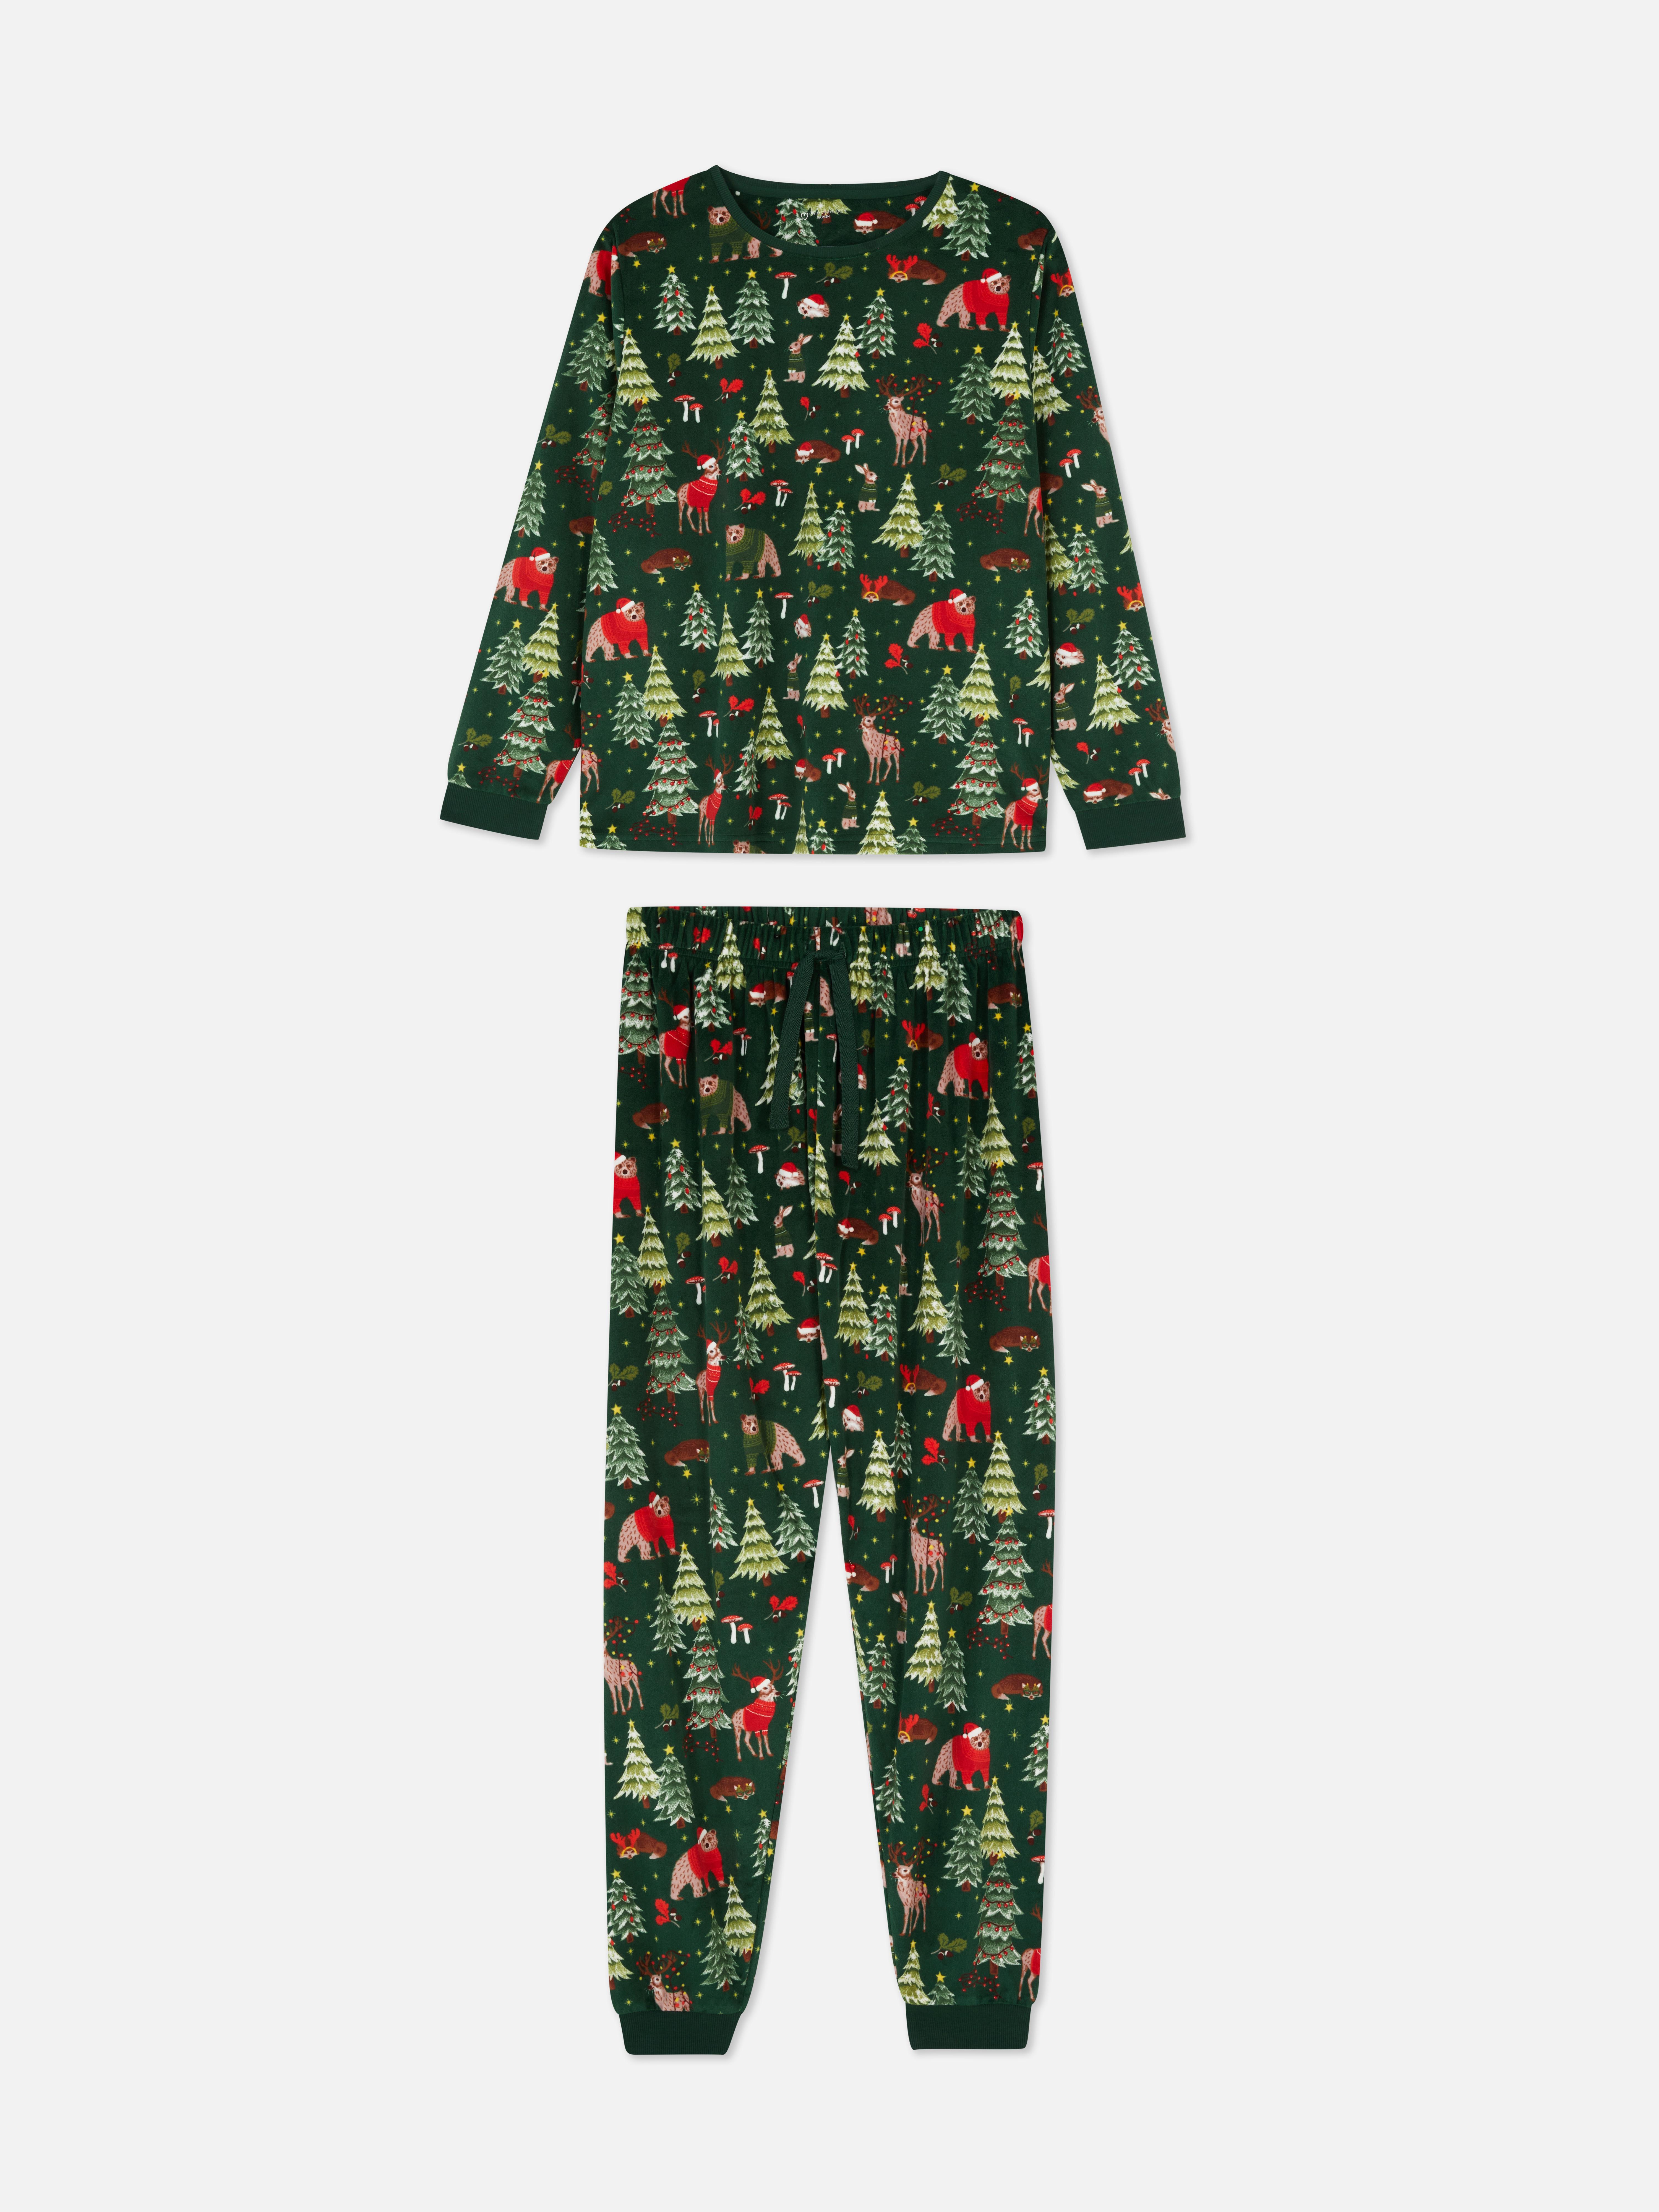 Women's Woodland Print Christmas Family Pajamas